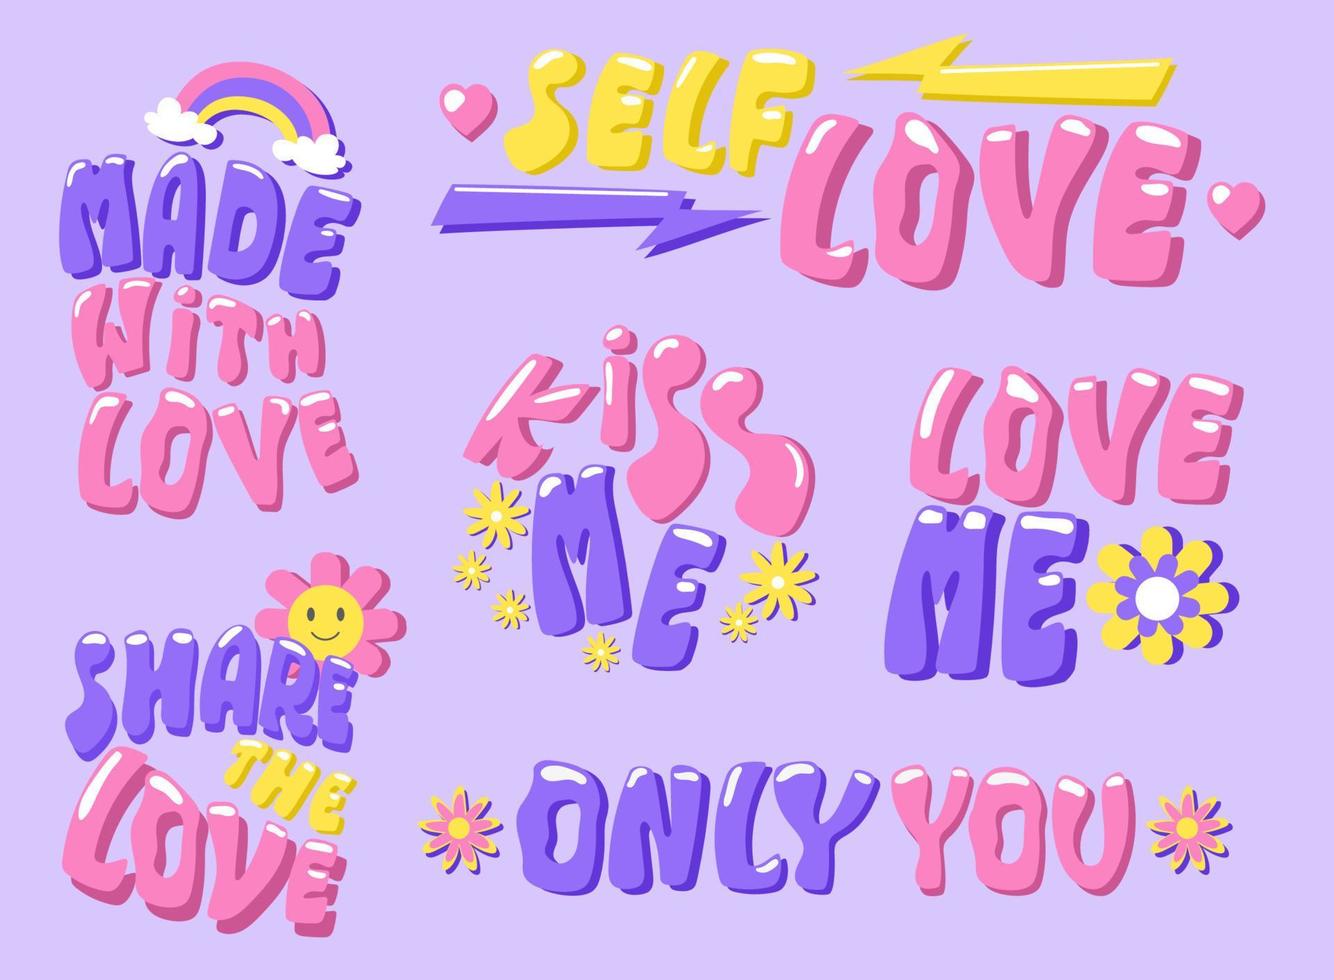 reeks van hand getekend kort belettering zinnen over liefde. groovy hippie belettering stickers. vector